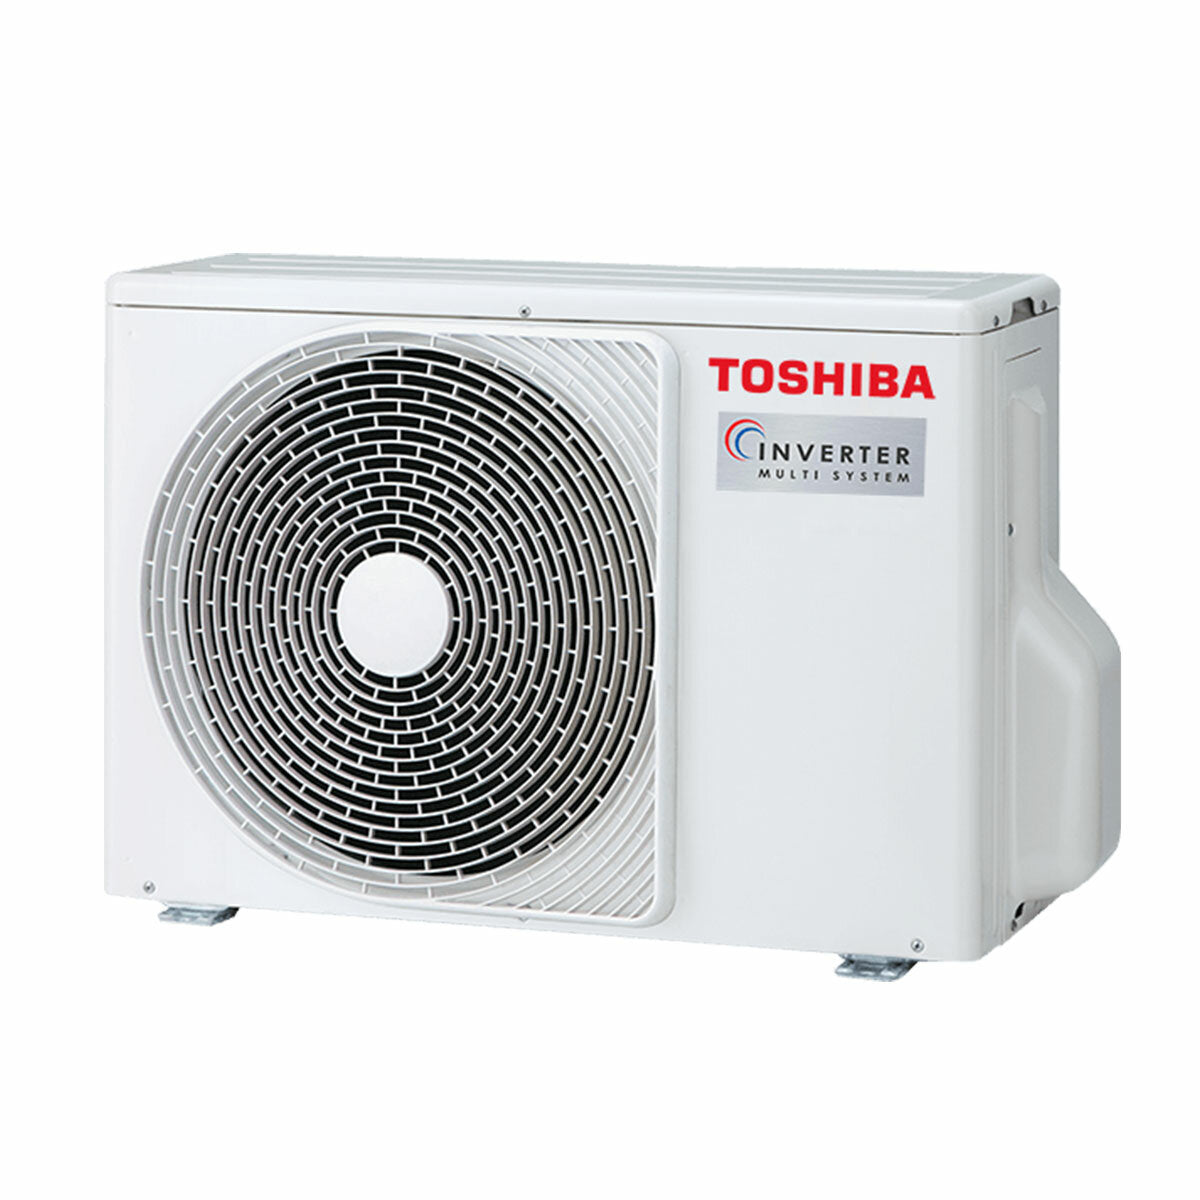 Climatiseur trial split Toshiba SHORAI Edge White 5000+9000+16000 BTU inverseur A+++ unité extérieure wifi 5,2 kW 